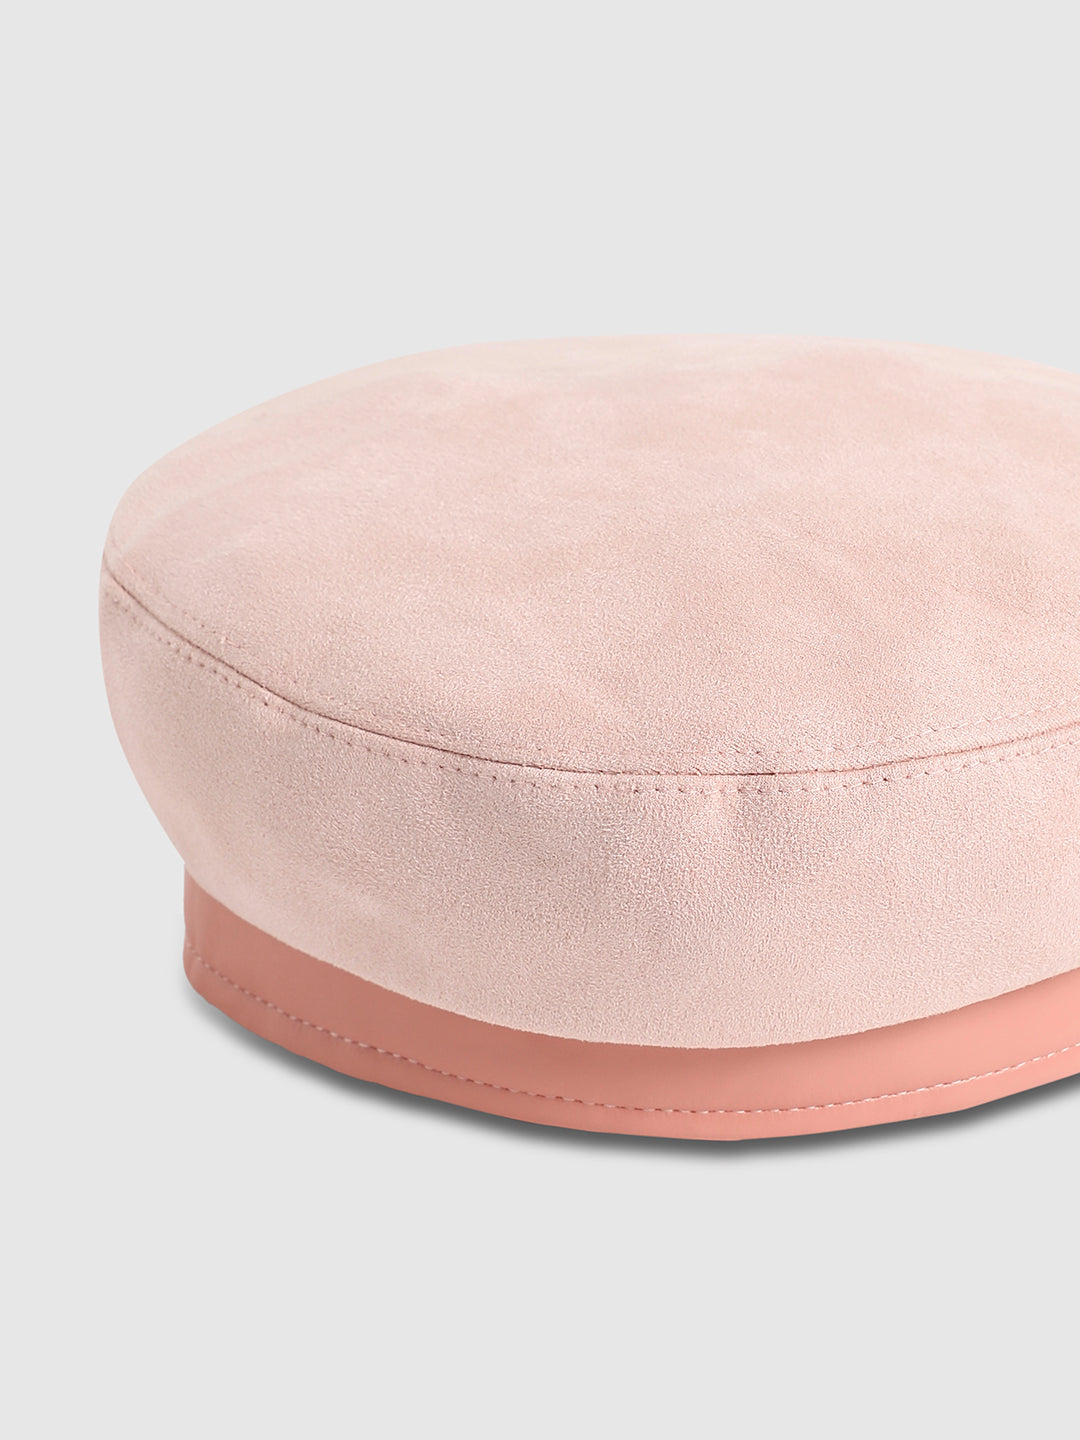 Contrast Texture Beret Hat - Baby Pink